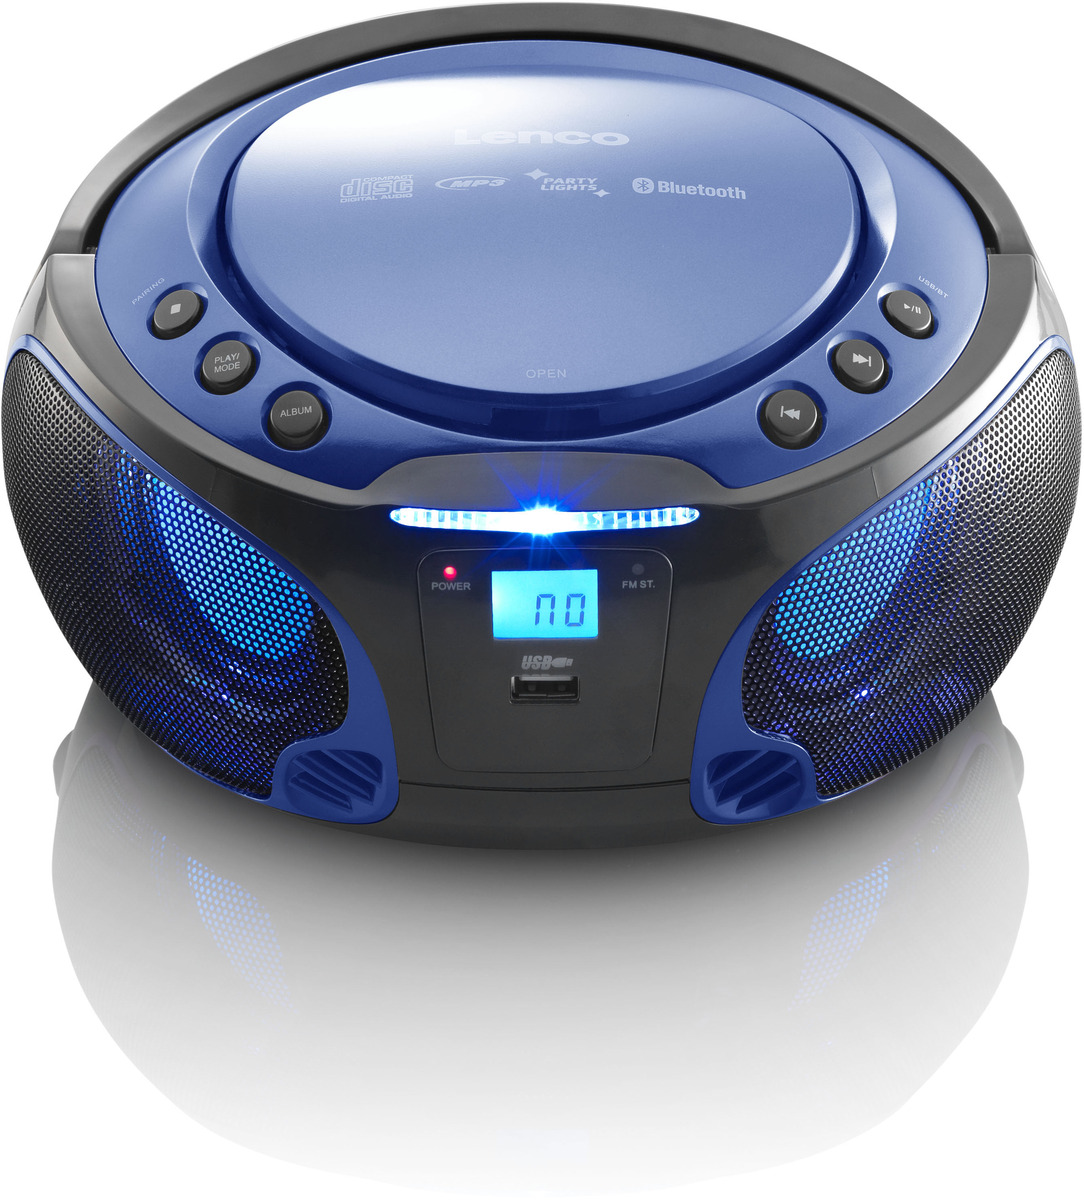 Lenco SCD-550BU CD-Radio mit best4you - USB, MP3, (Blau) BT, Lichteffekte